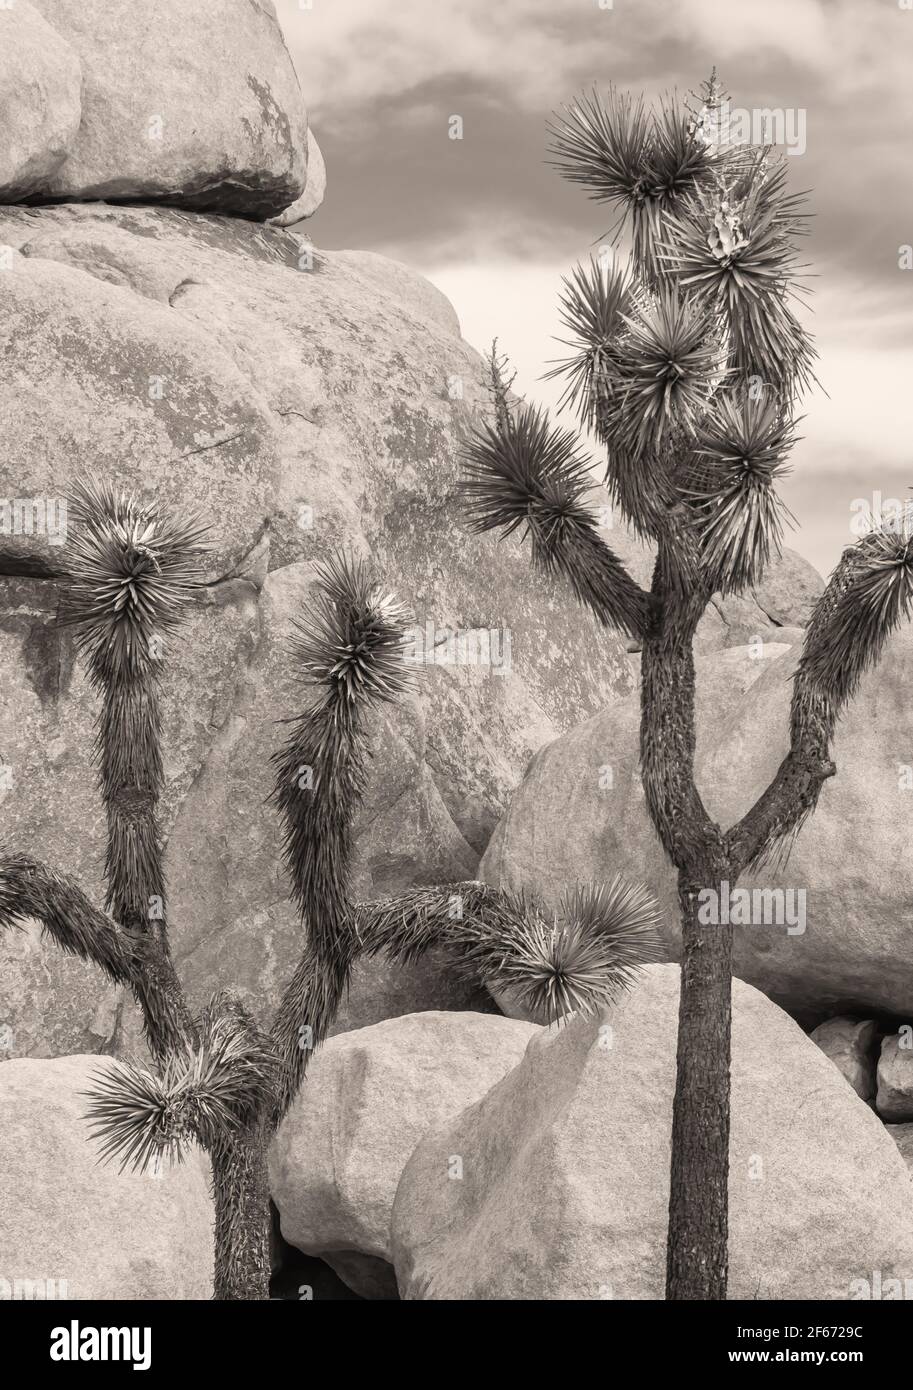 Joshua tree and the rock formation at Joshua Tree National Park, California, USA. Stock Photo